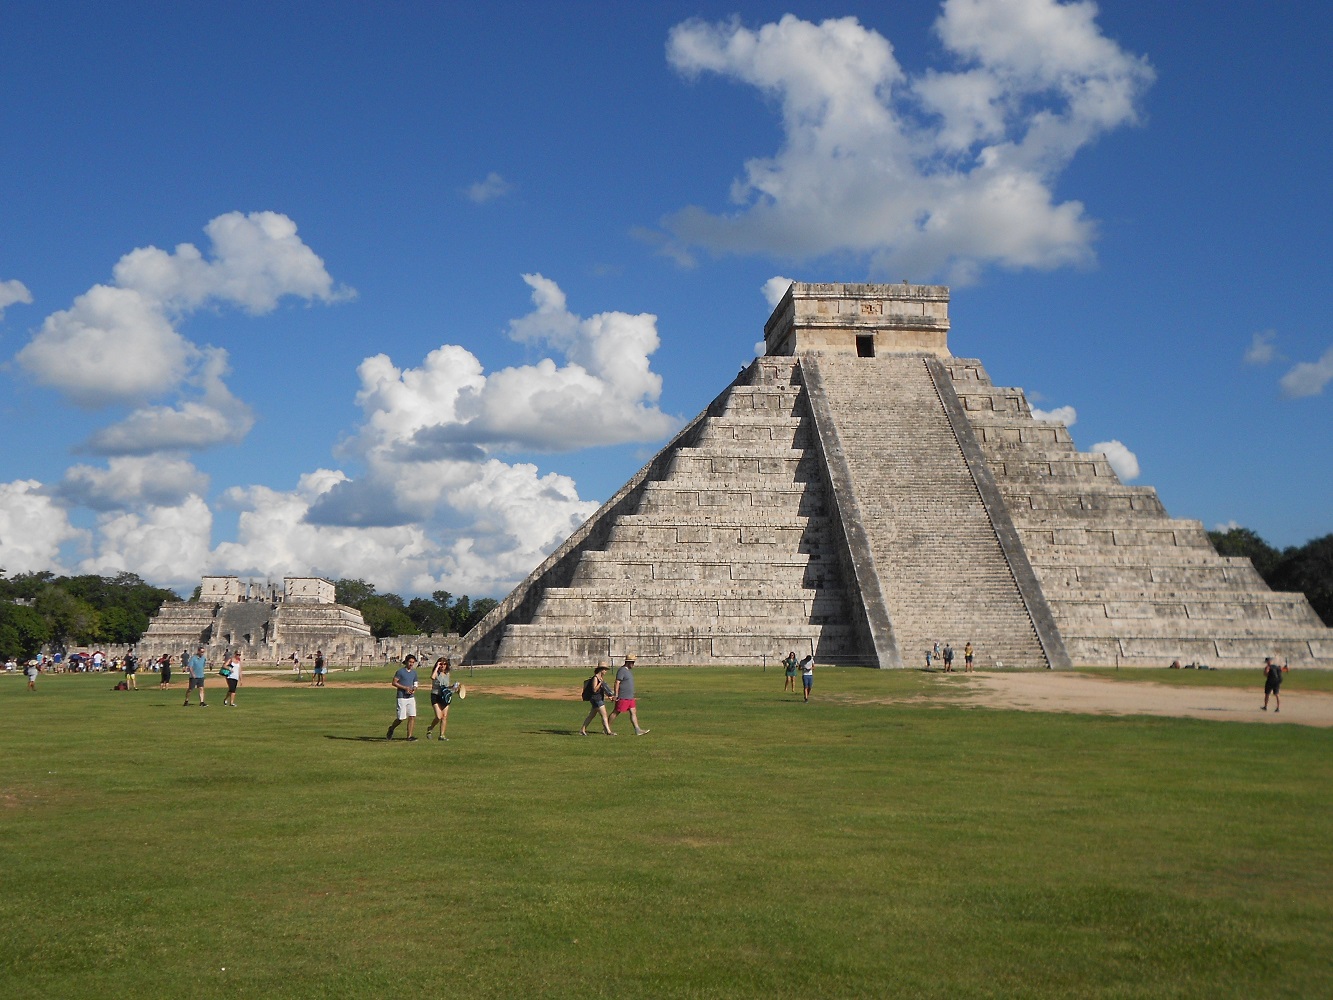 Mein Schiff Landausflug zur Hauptpyramide von Chichén Itzá - Mexiko